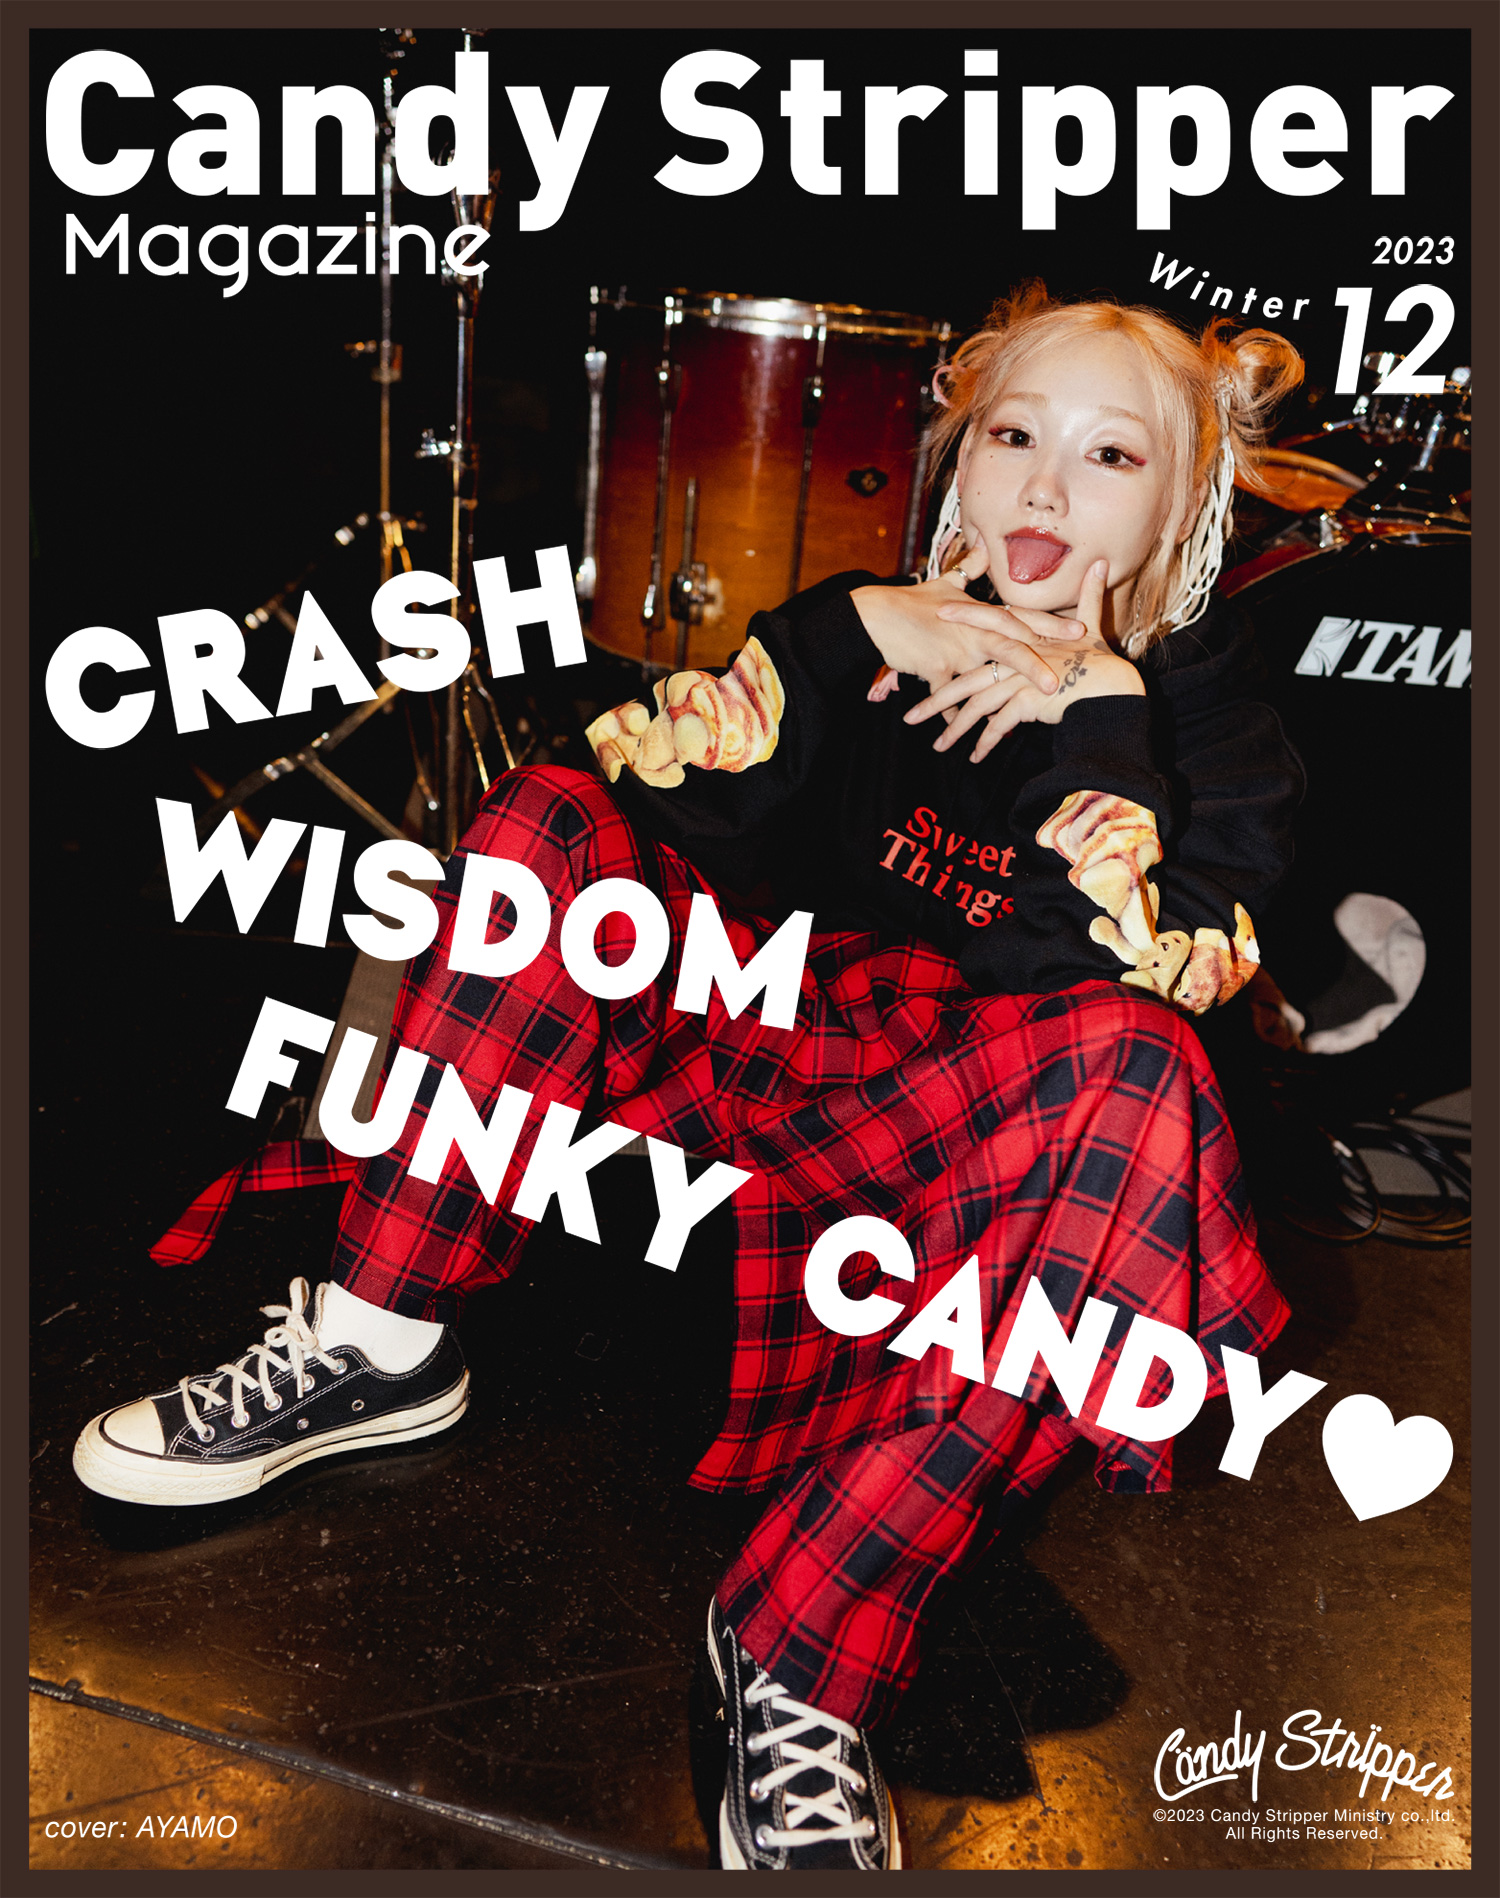 Candy Stripper magazine 2023 Winter 12